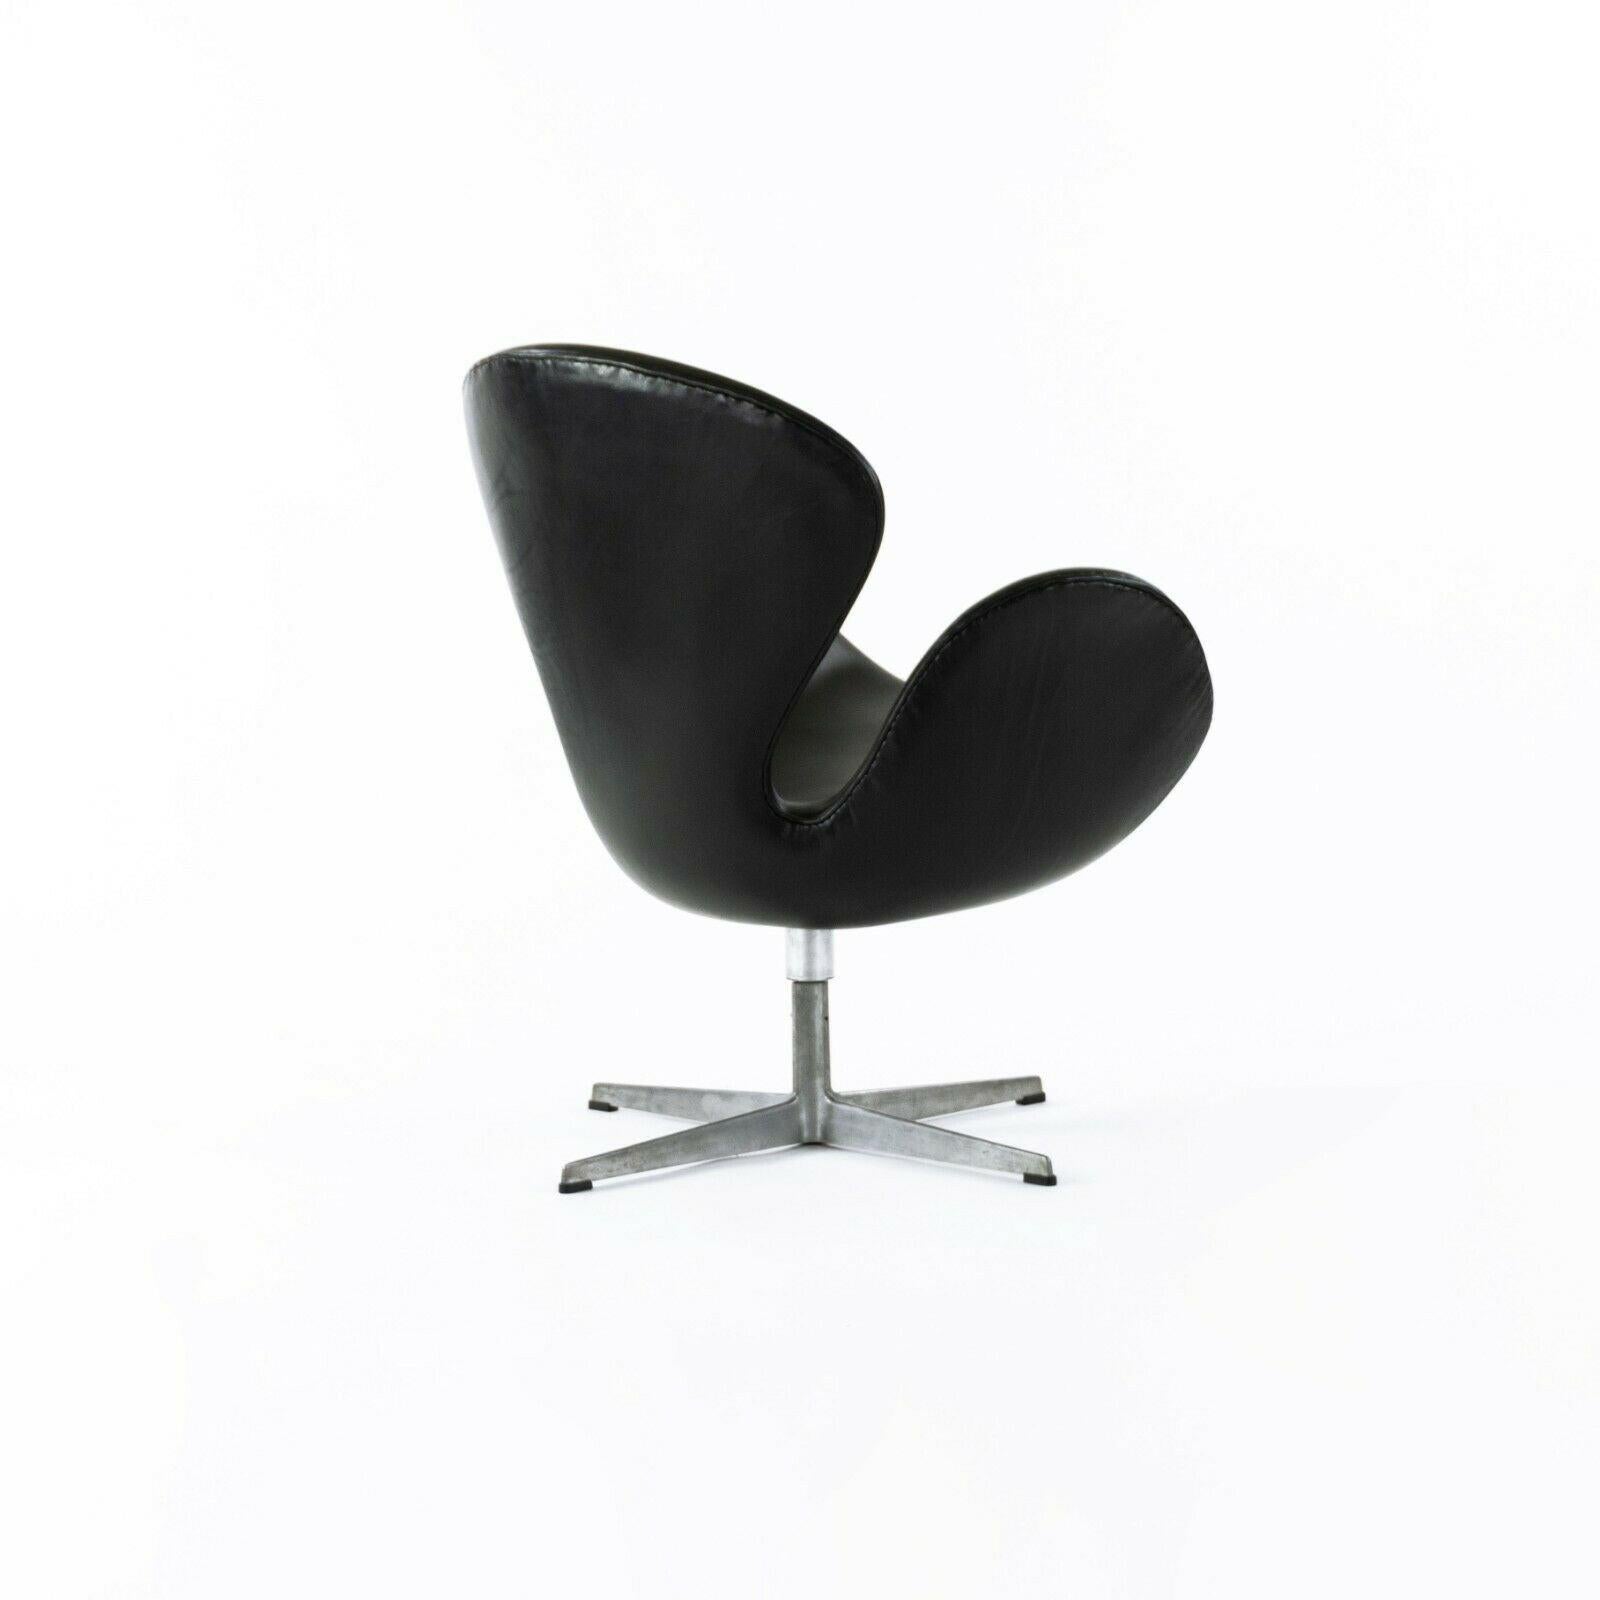 Danish 1960s Arne Jacobsen Swan Chair by Fritz Hansen of Denmark in Black Leather For Sale